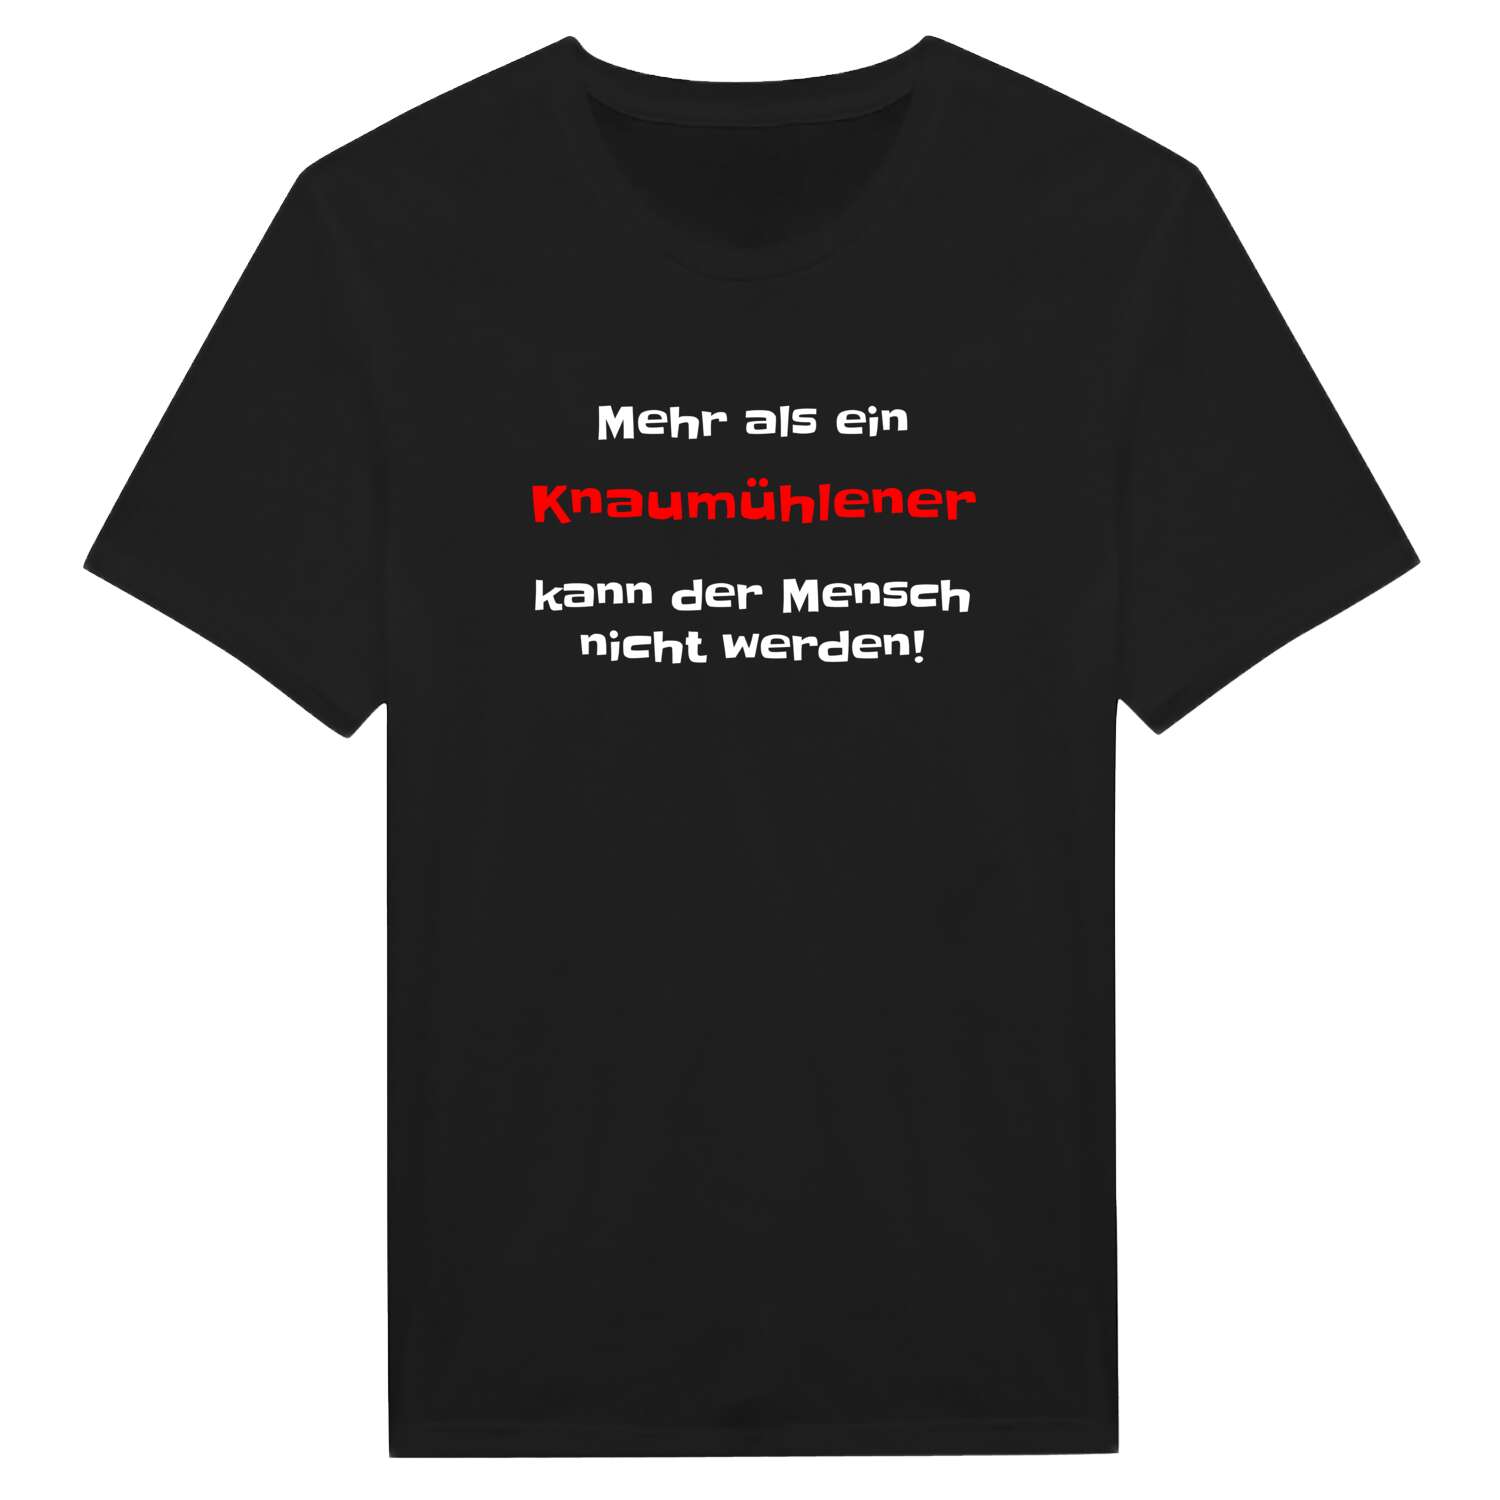 Knaumühle T-Shirt »Mehr als ein«